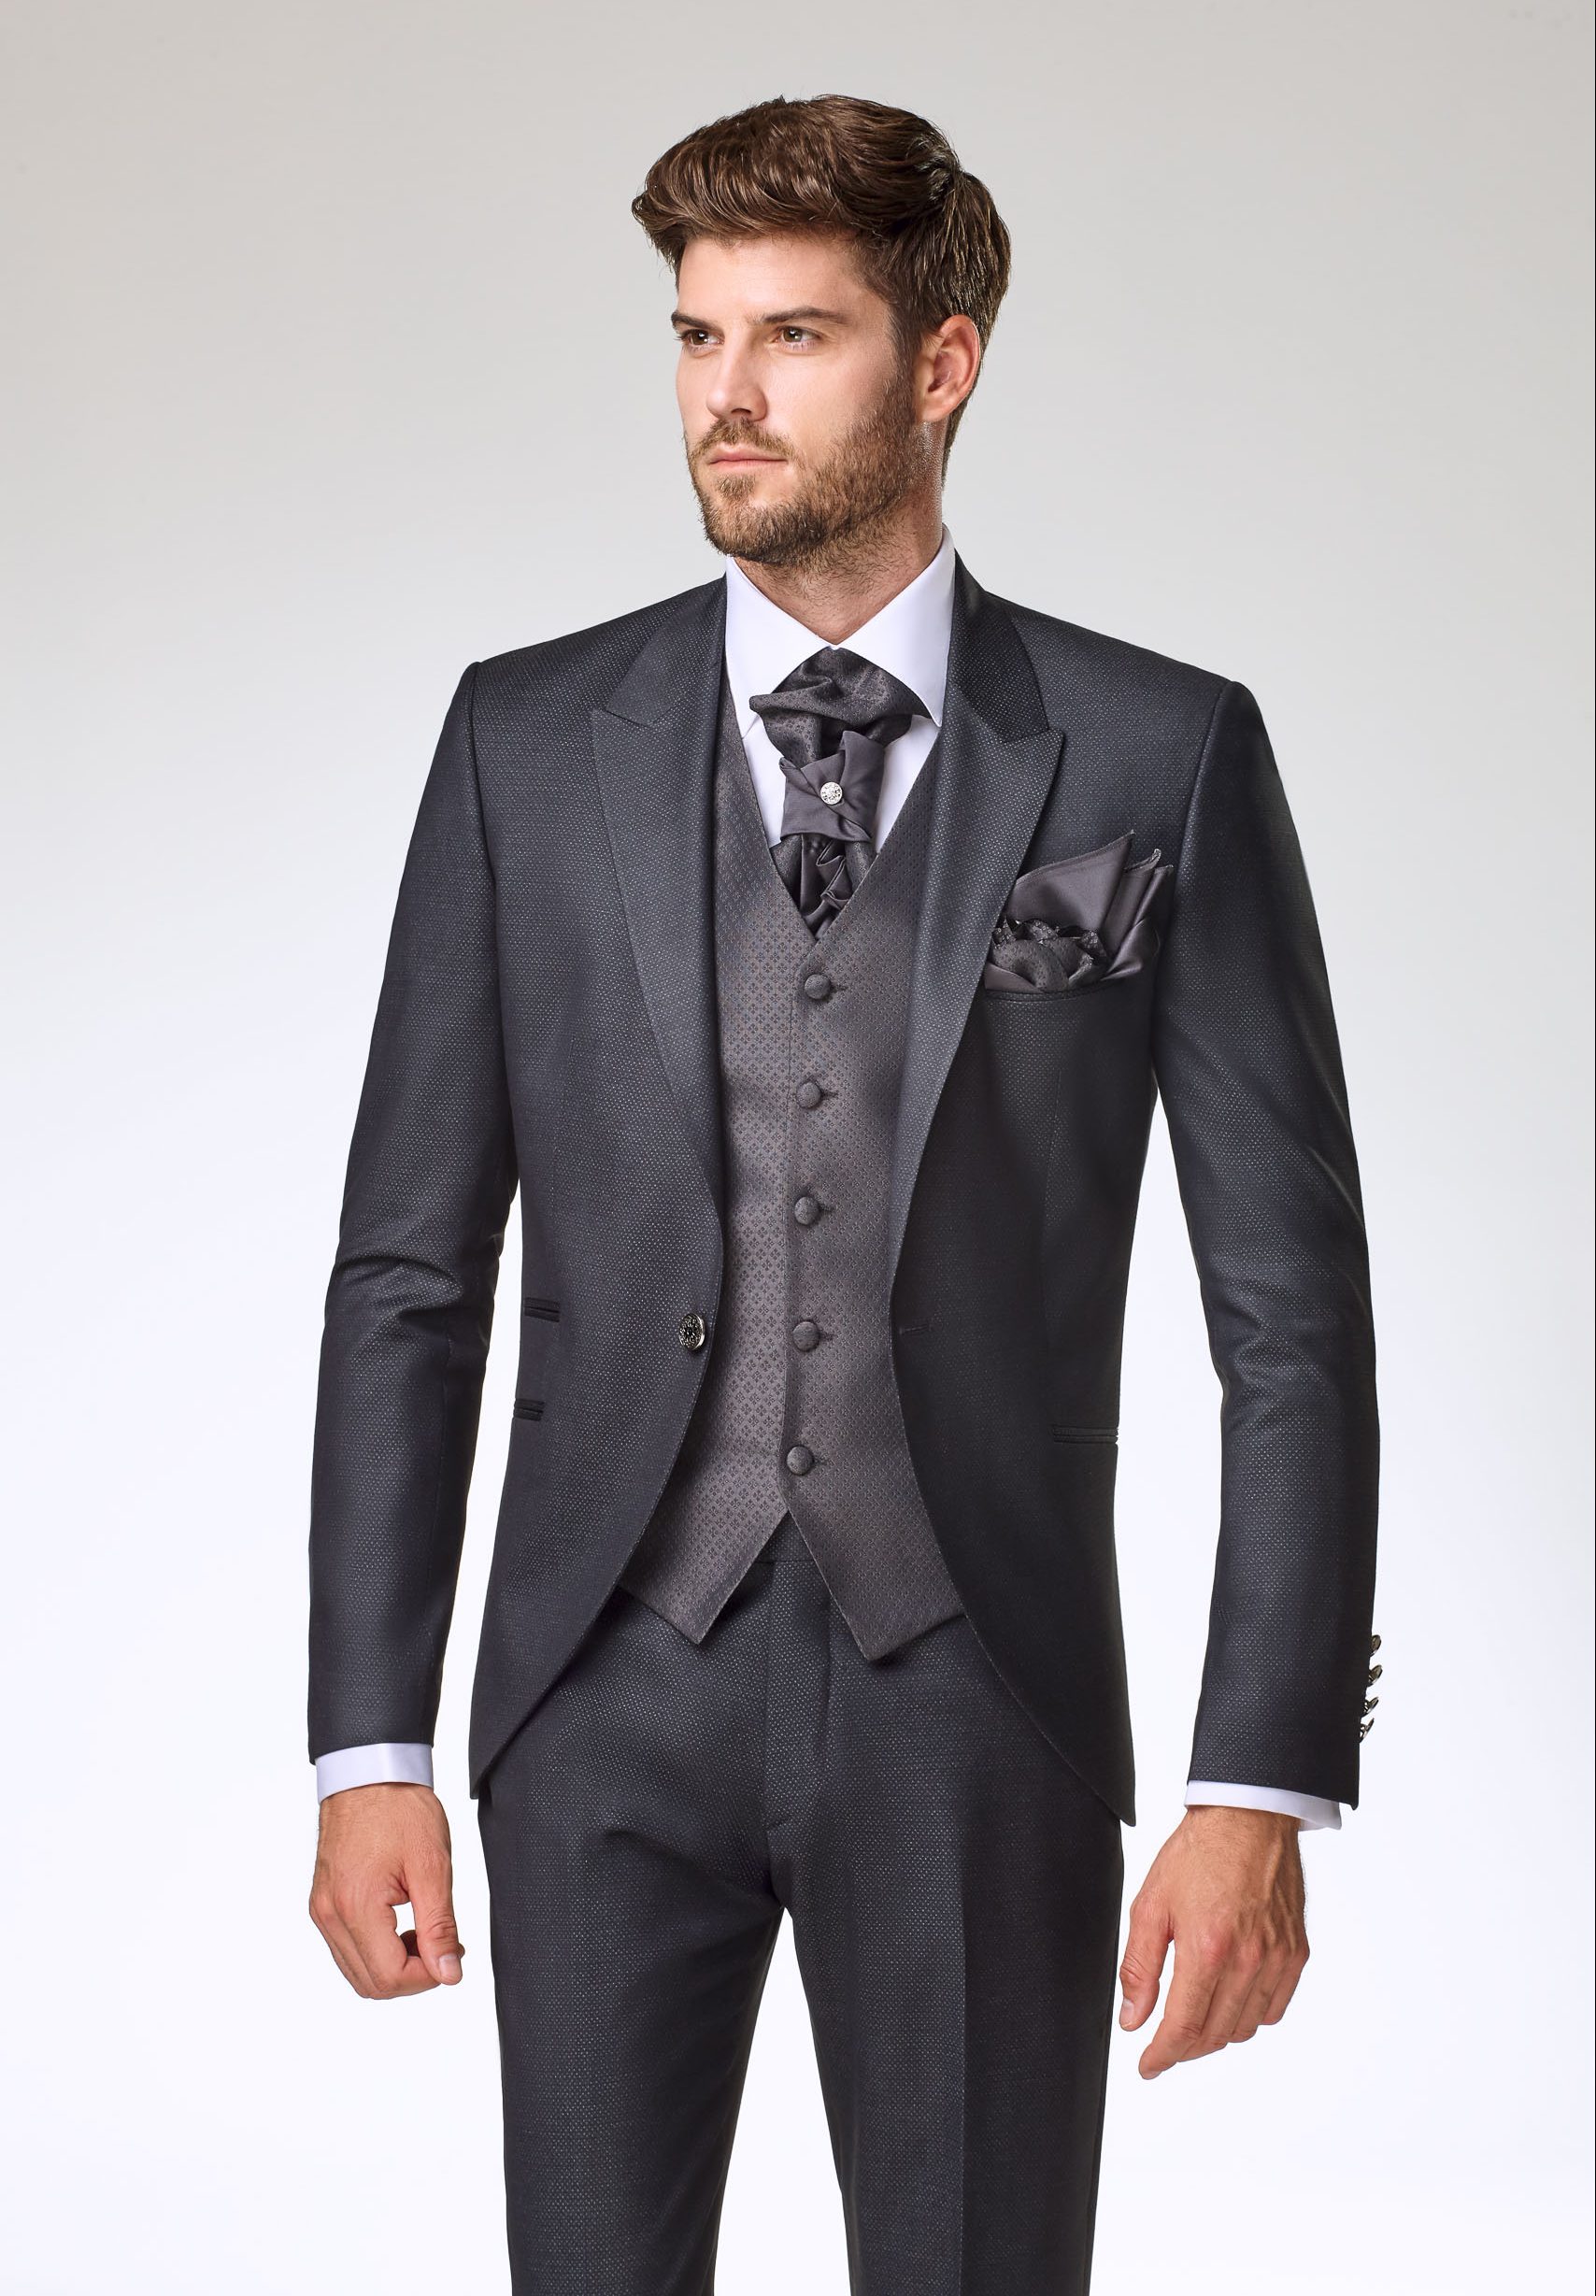 Poročni salon z bogato izbiro moških oblačil